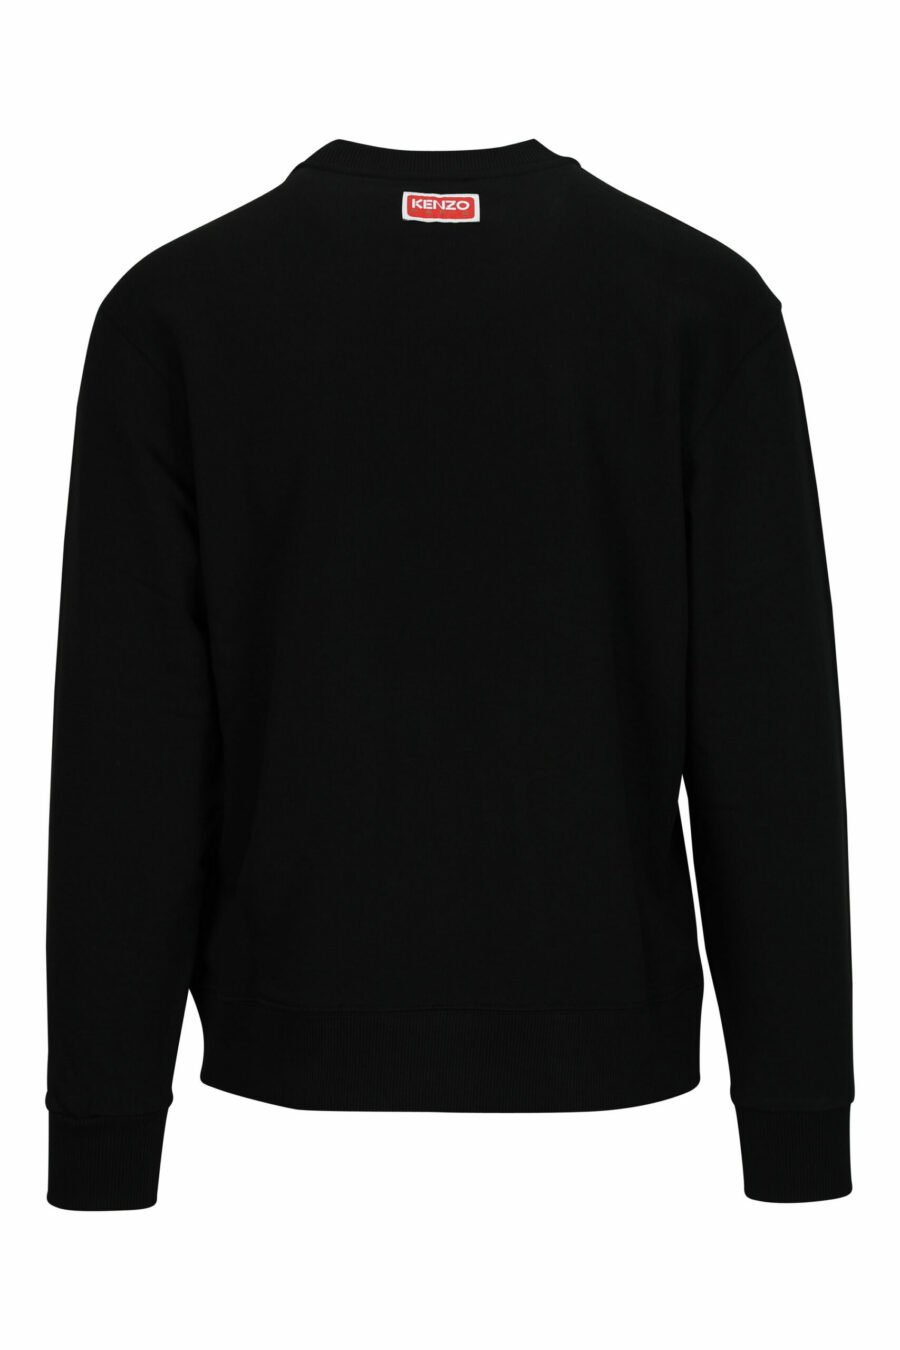 Schwarzes Sweatshirt in Übergröße mit kleinem, geprägtem Tiger-Logo - 3612230571426 1 skaliert